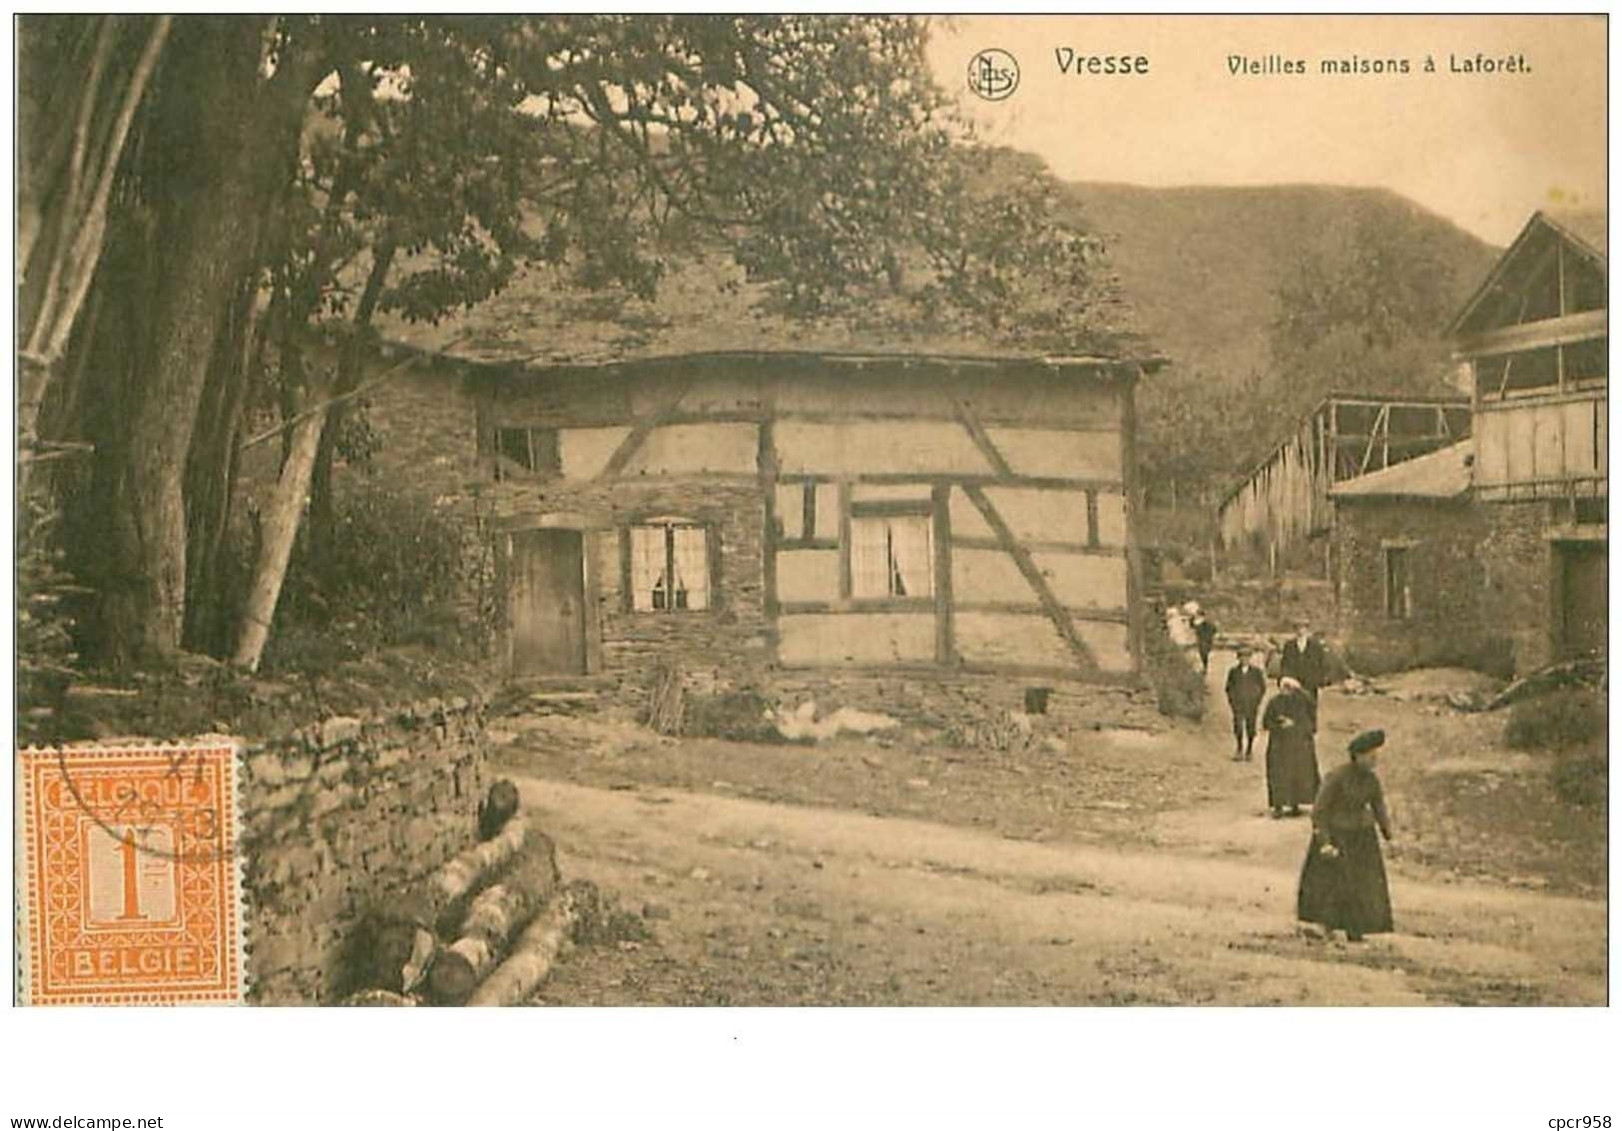 Belgique. N°35721.vresse.vieilles Maisons à Laforet - Vresse-sur-Semois